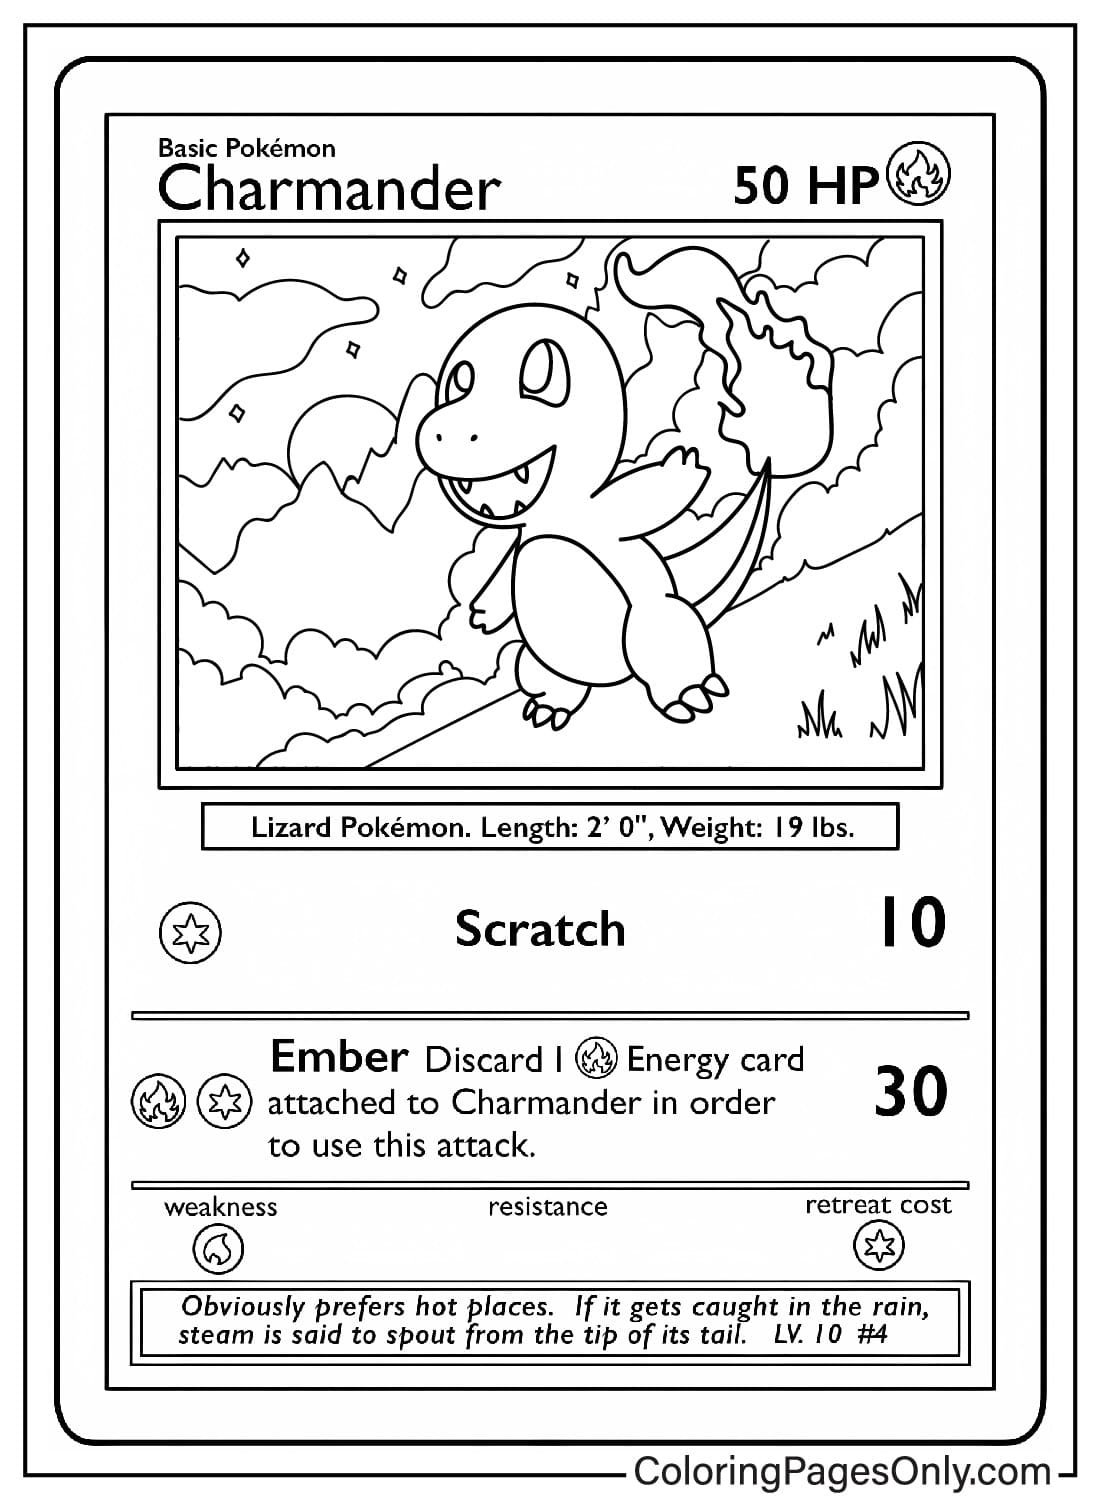 Foglio da colorare della carta Charmander dalla carta Pokemon